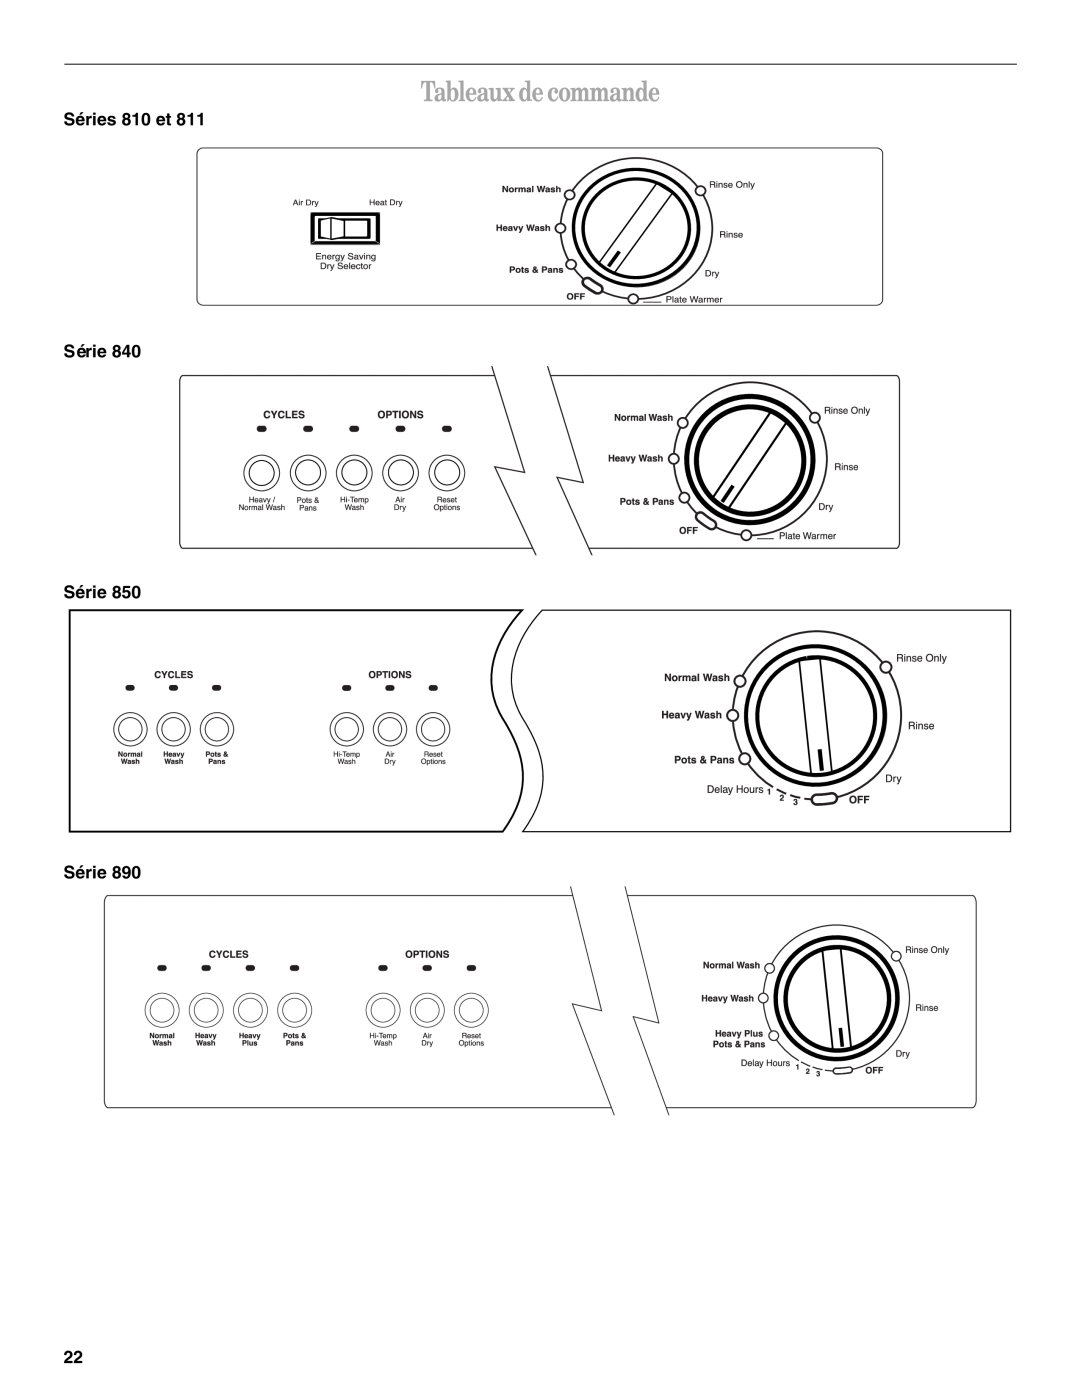 Whirlpool Series 810 manual Tableaux de commande, Séries 810 et Série Série Série 